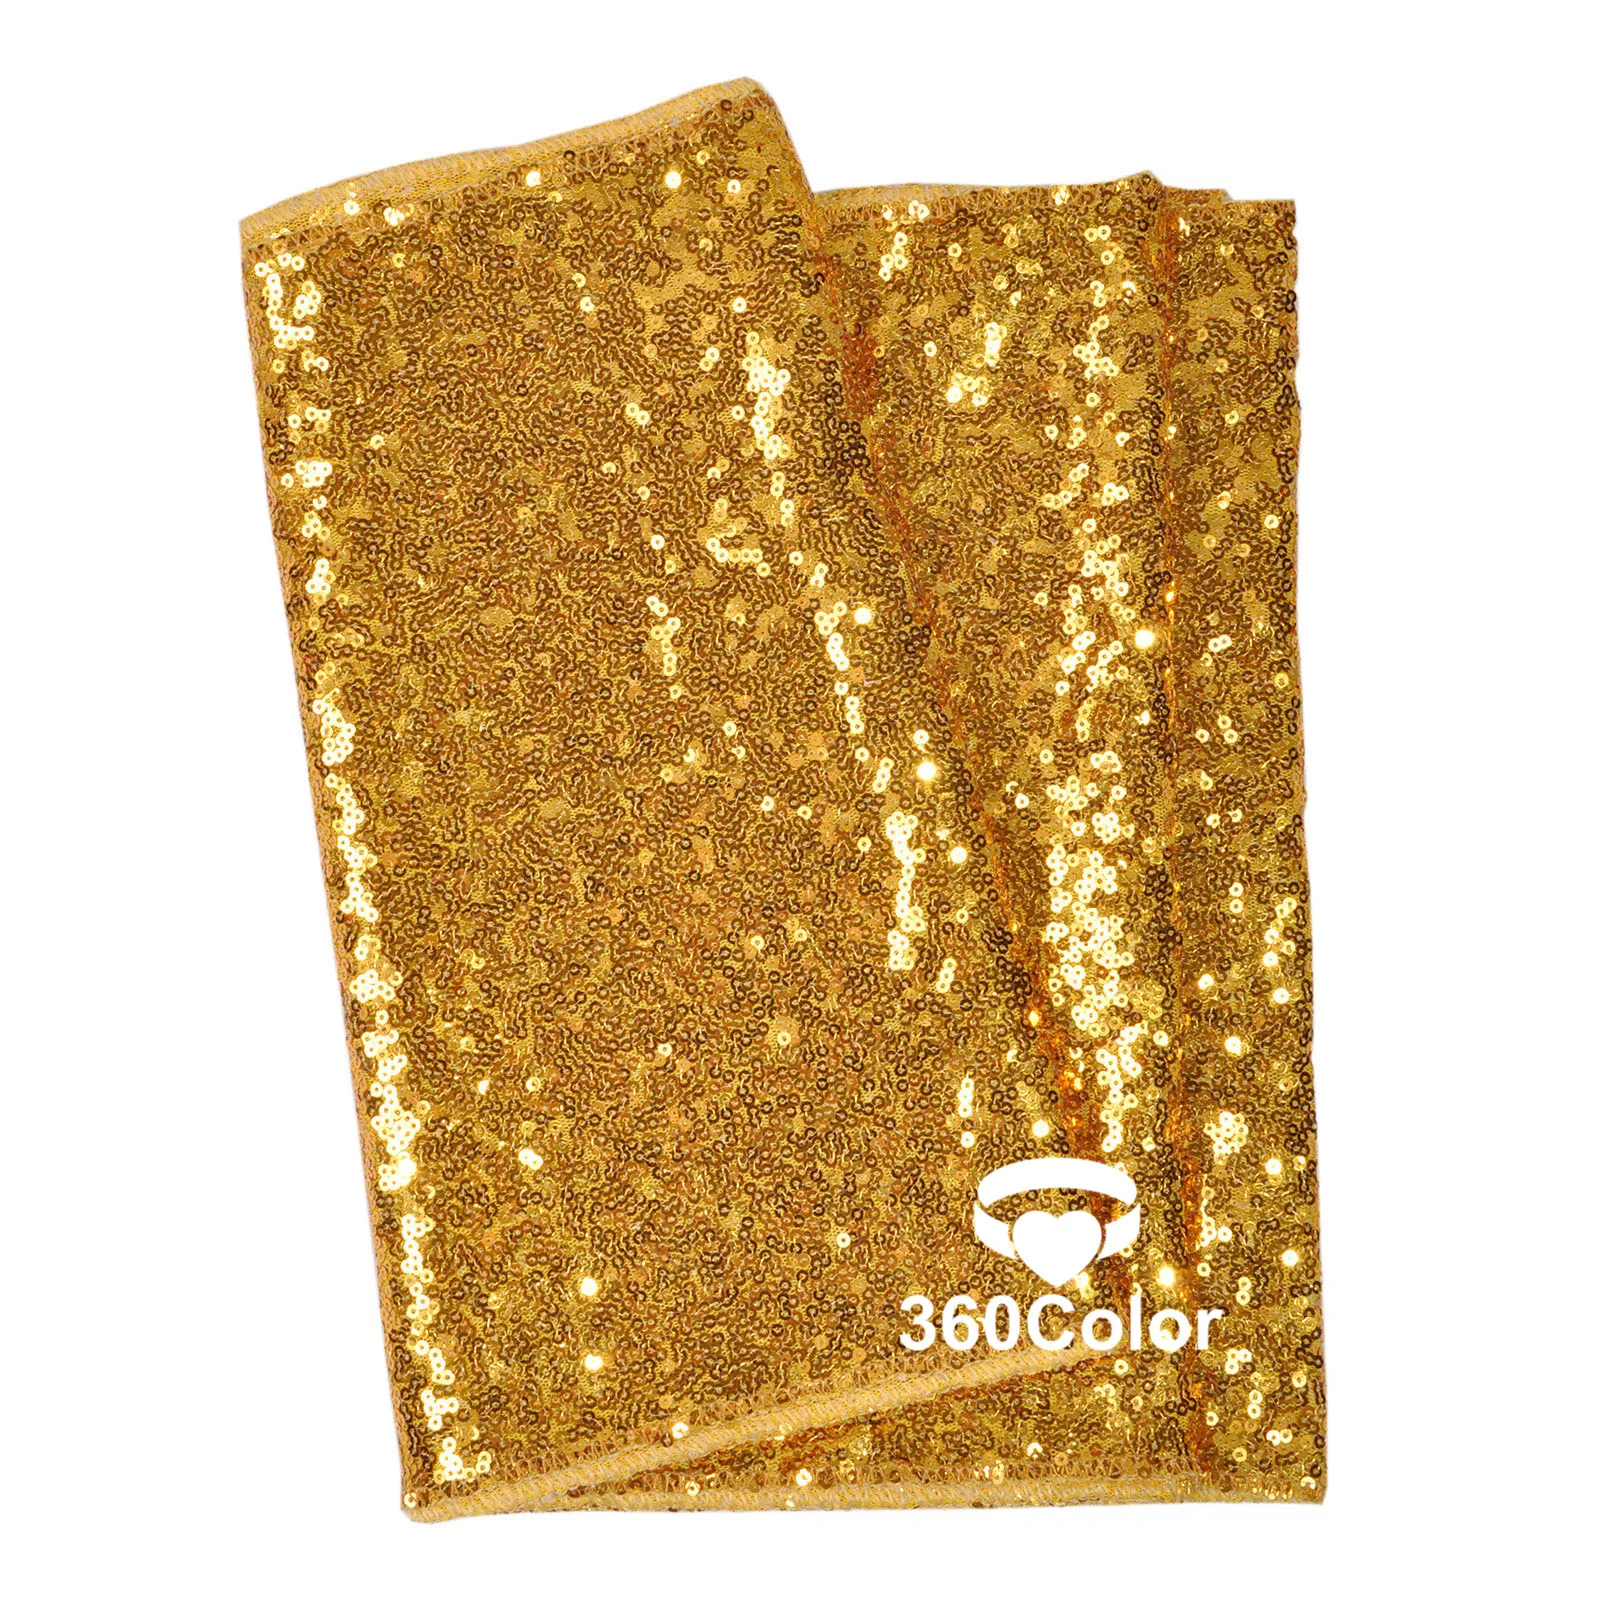 Золотая, серебряная, розовая ткань с золотистыми блестками 30x275 cmTable Runner блестящая Подвеска для свадебной вечеринки DIY украшения поставки 1" x 108" - Цвет: Gold